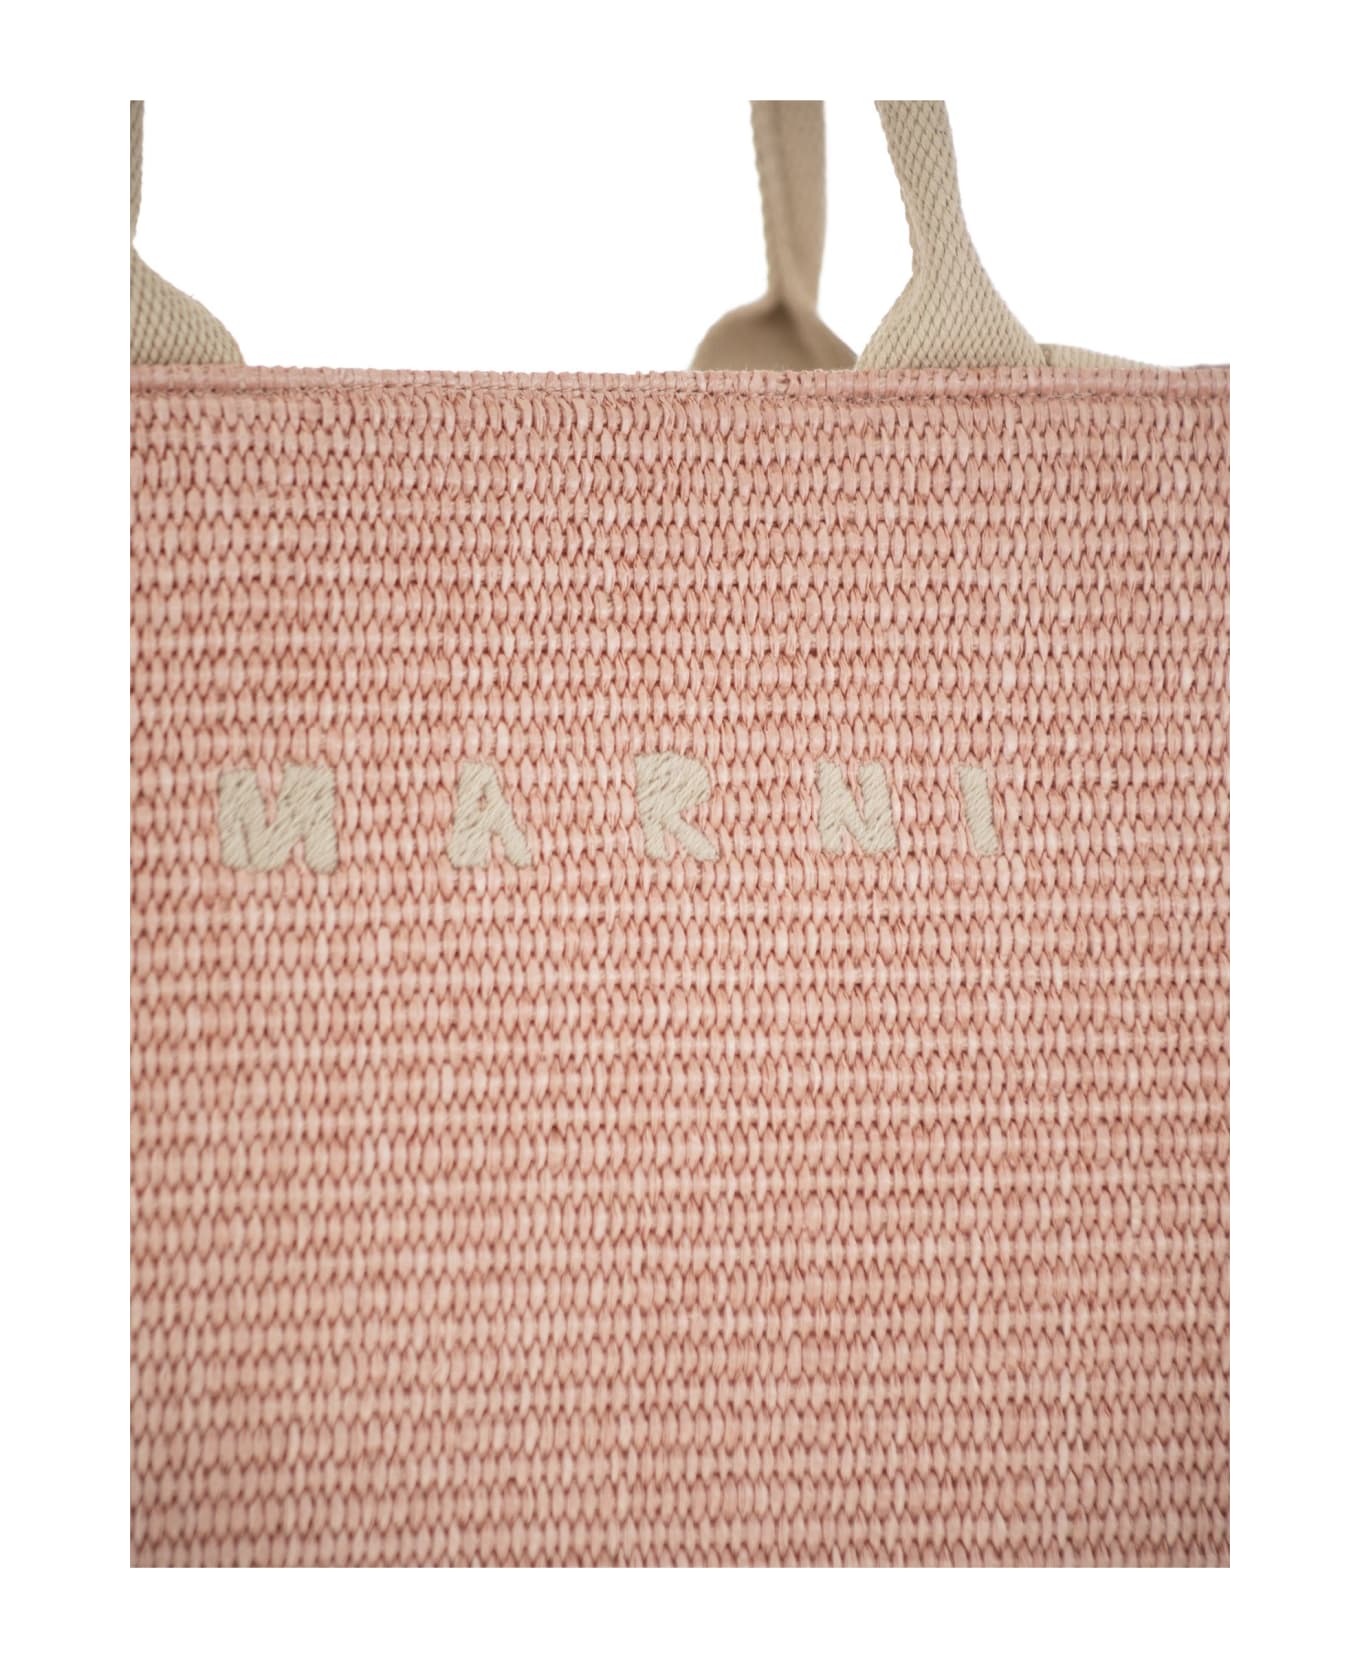 Marni Large Logo Tote Bag - Pink